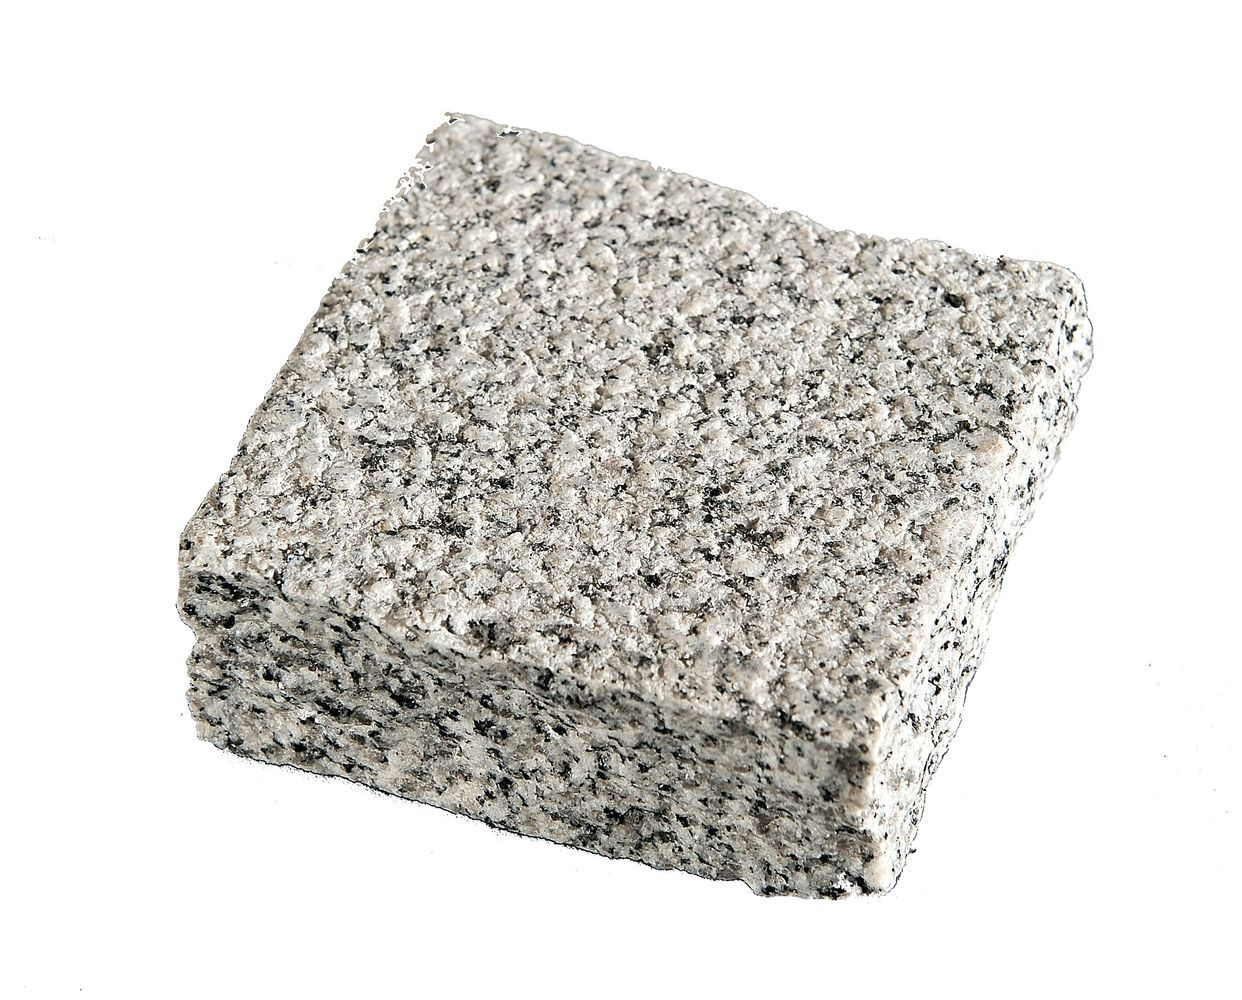 pave-granit-10x10x4-gris-perle-ambre-bouch-bd-clive-76u-m2-0